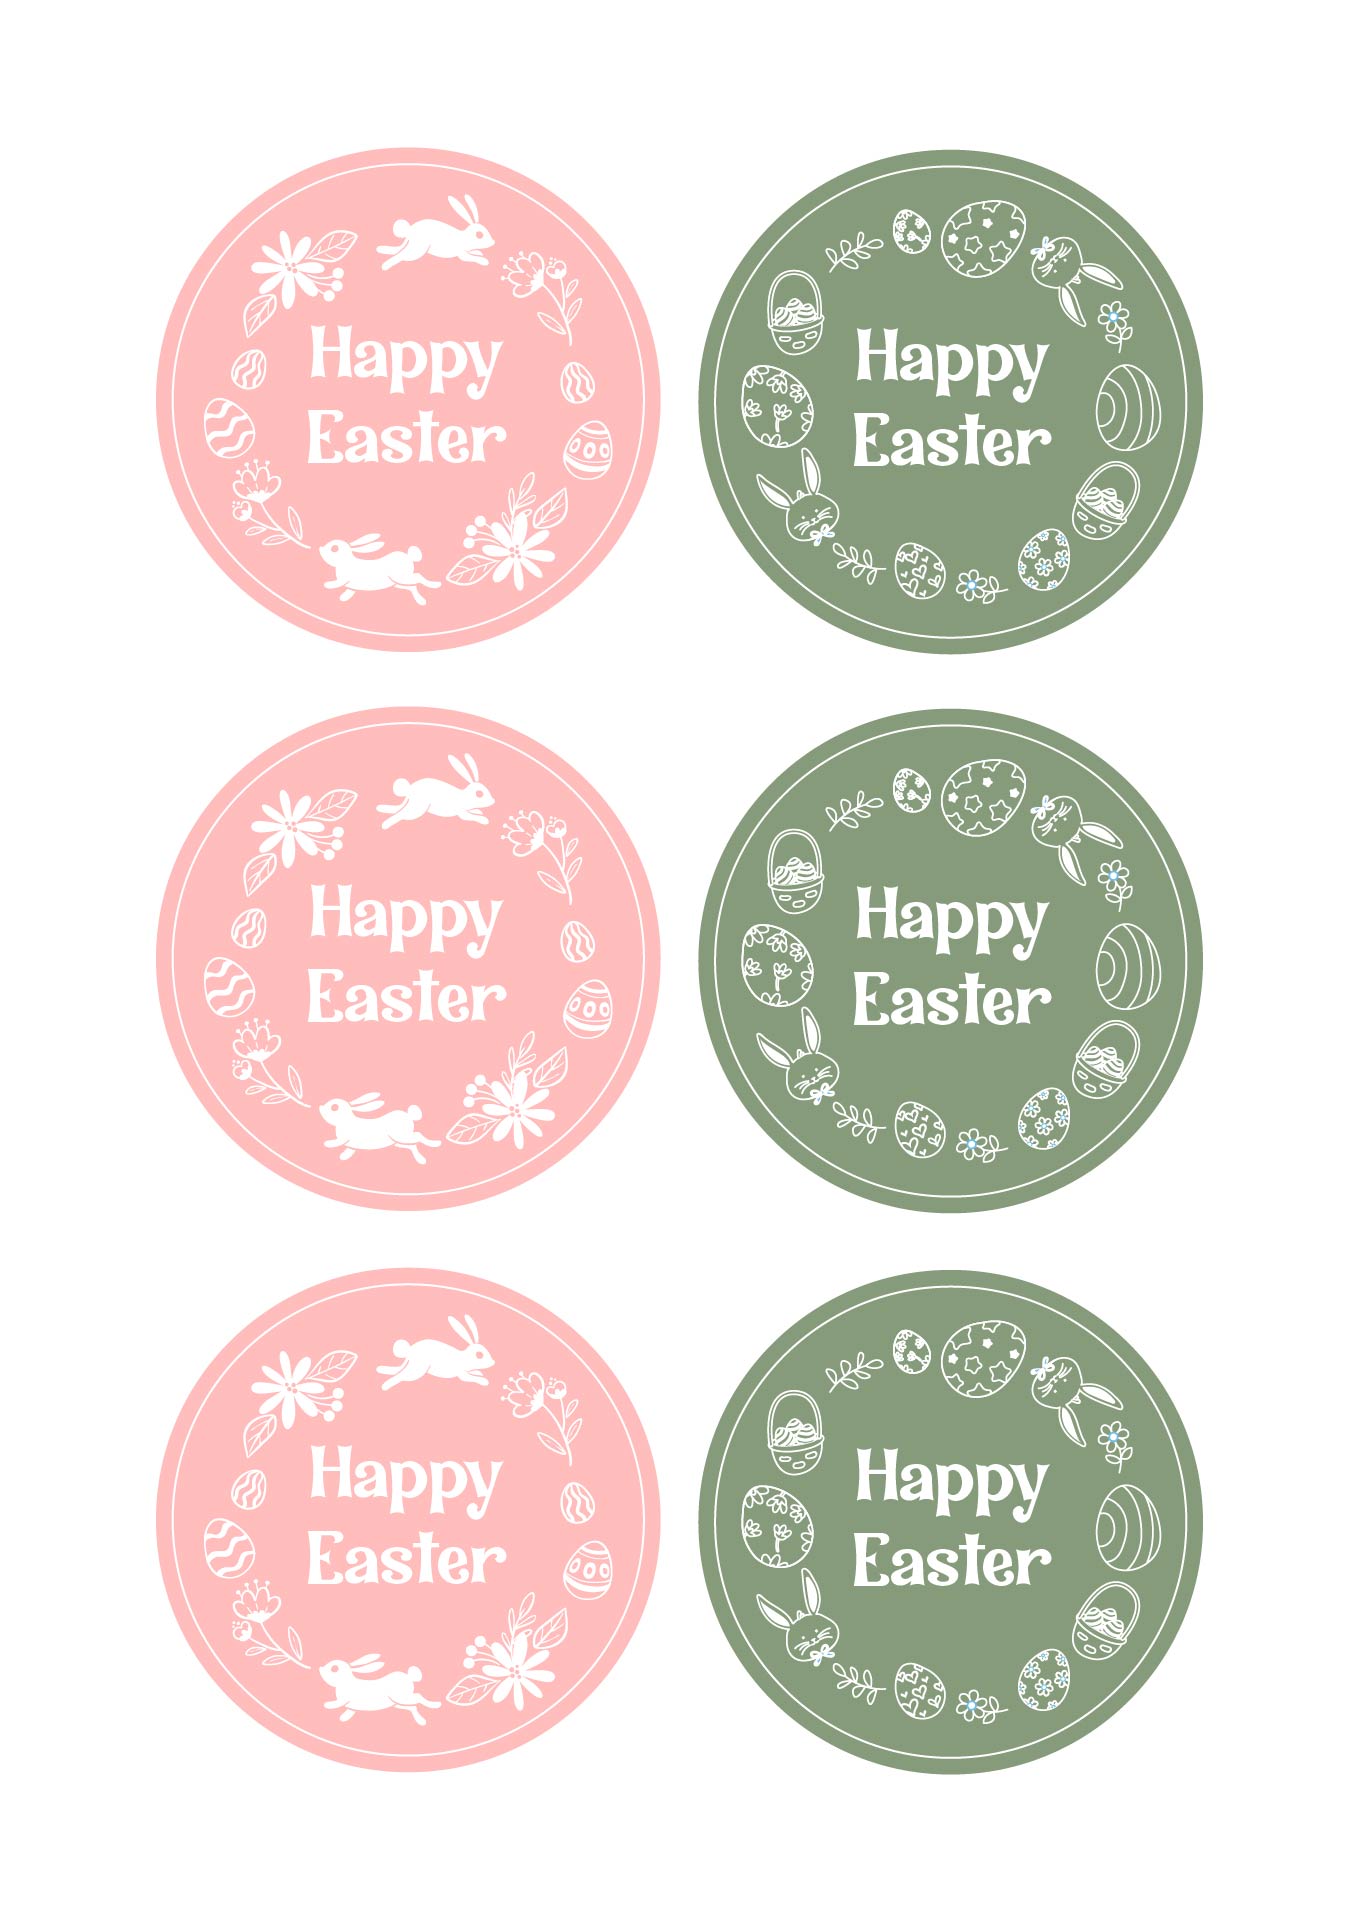 Easter Basket Tags Printable